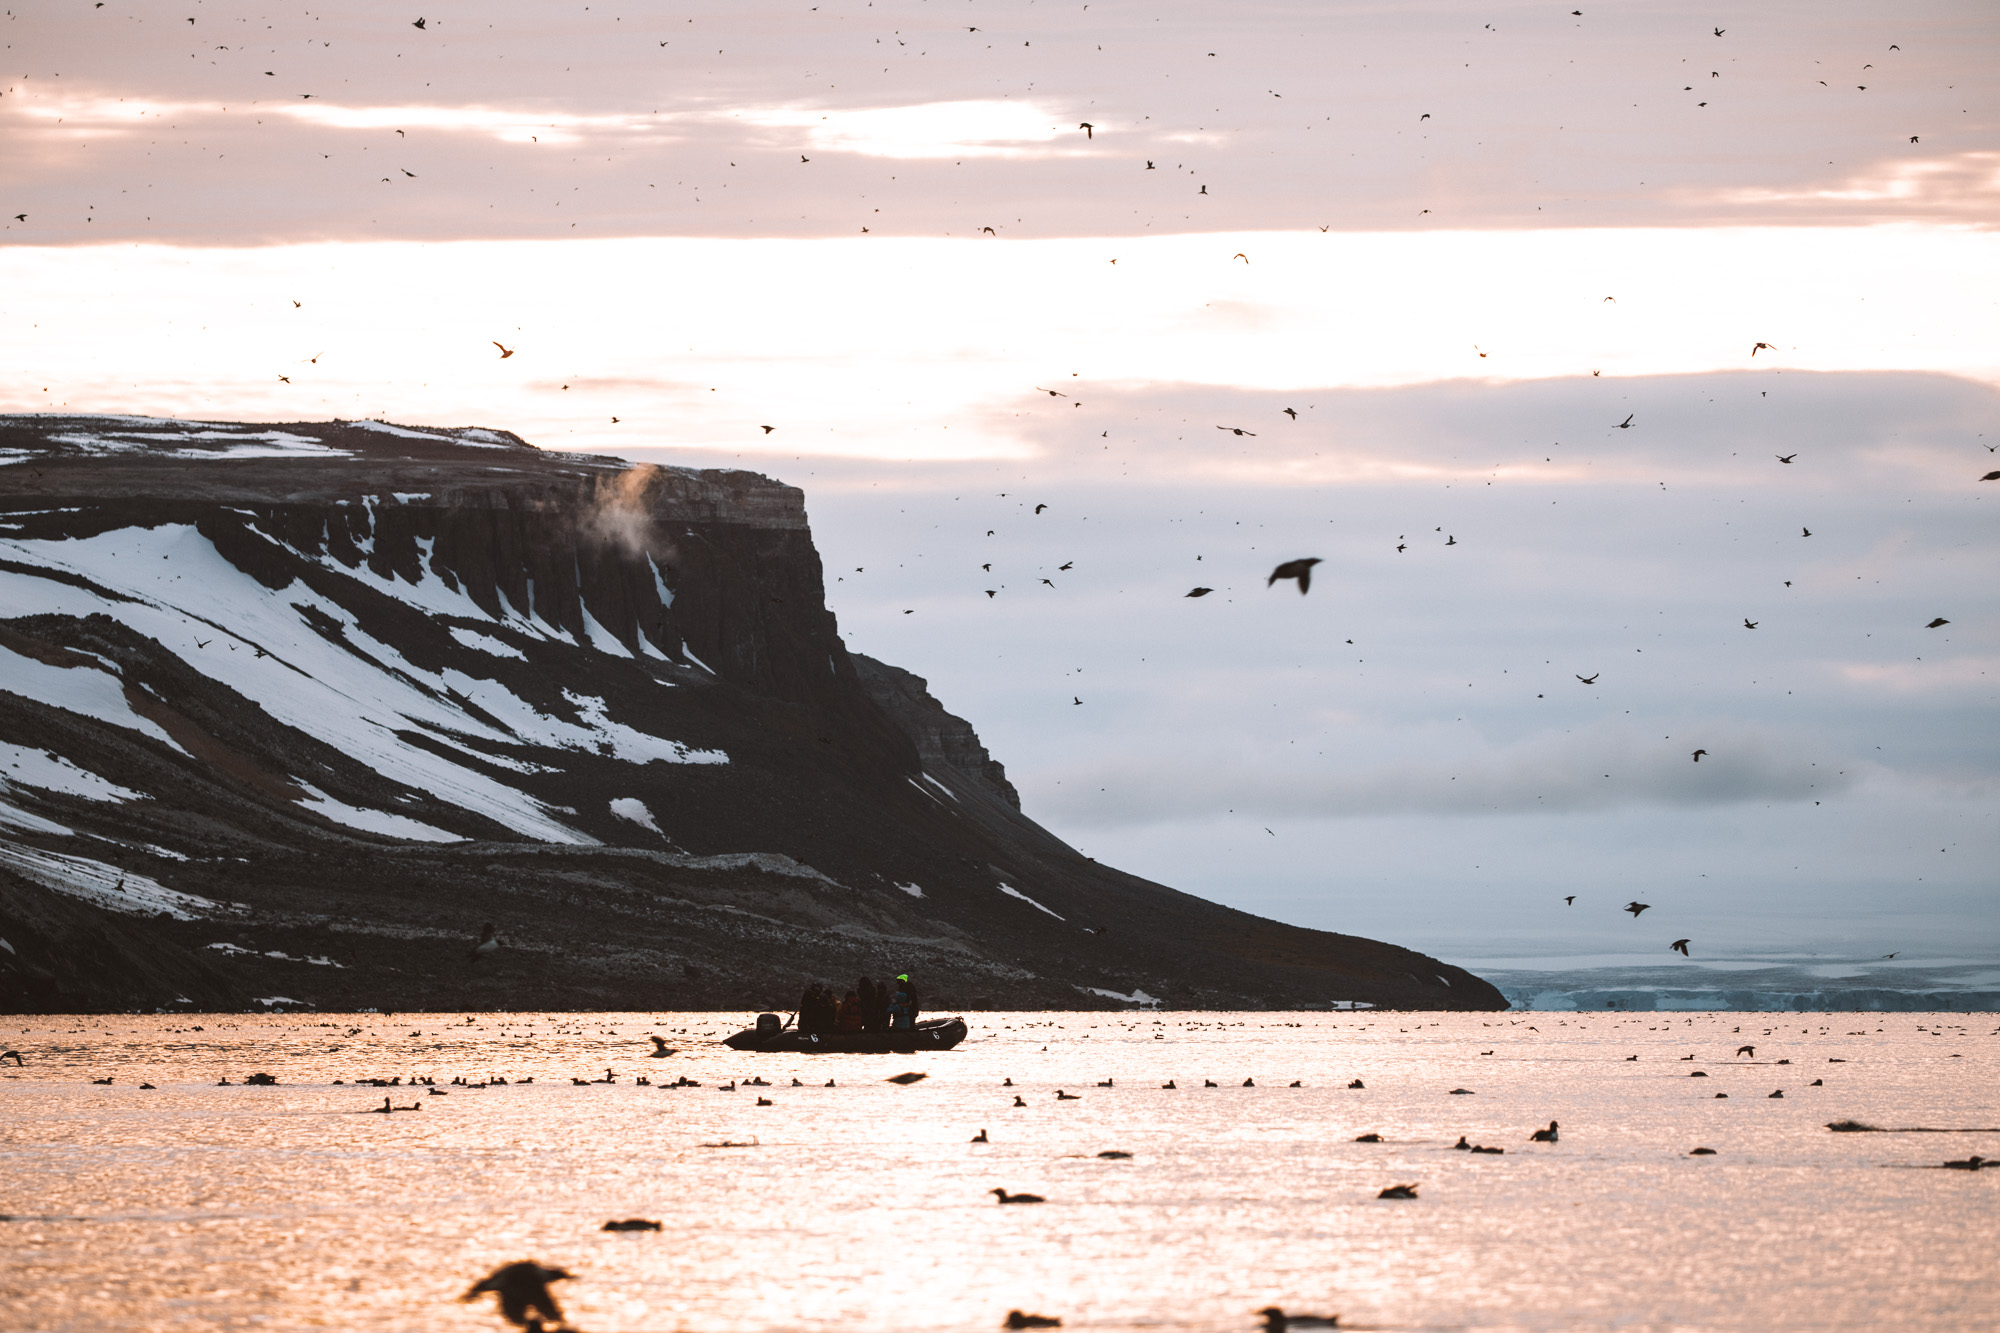 Alkefjellet bird cliffs Lomfjordhalvøya in Ny Friesland at Spitsbergen, Svalbard